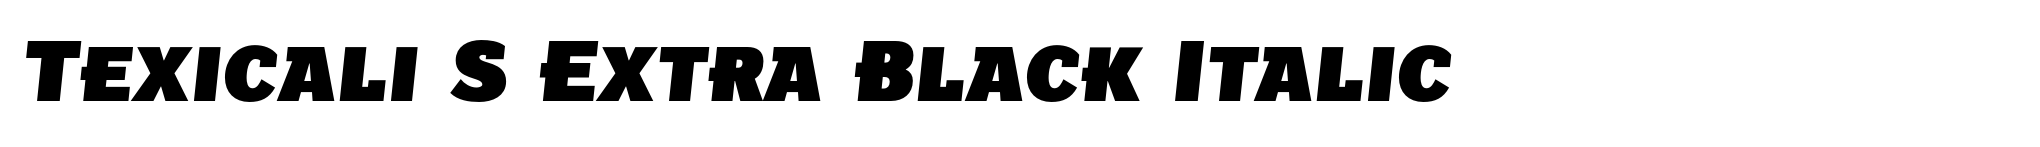 Texicali S Extra Black Italic image